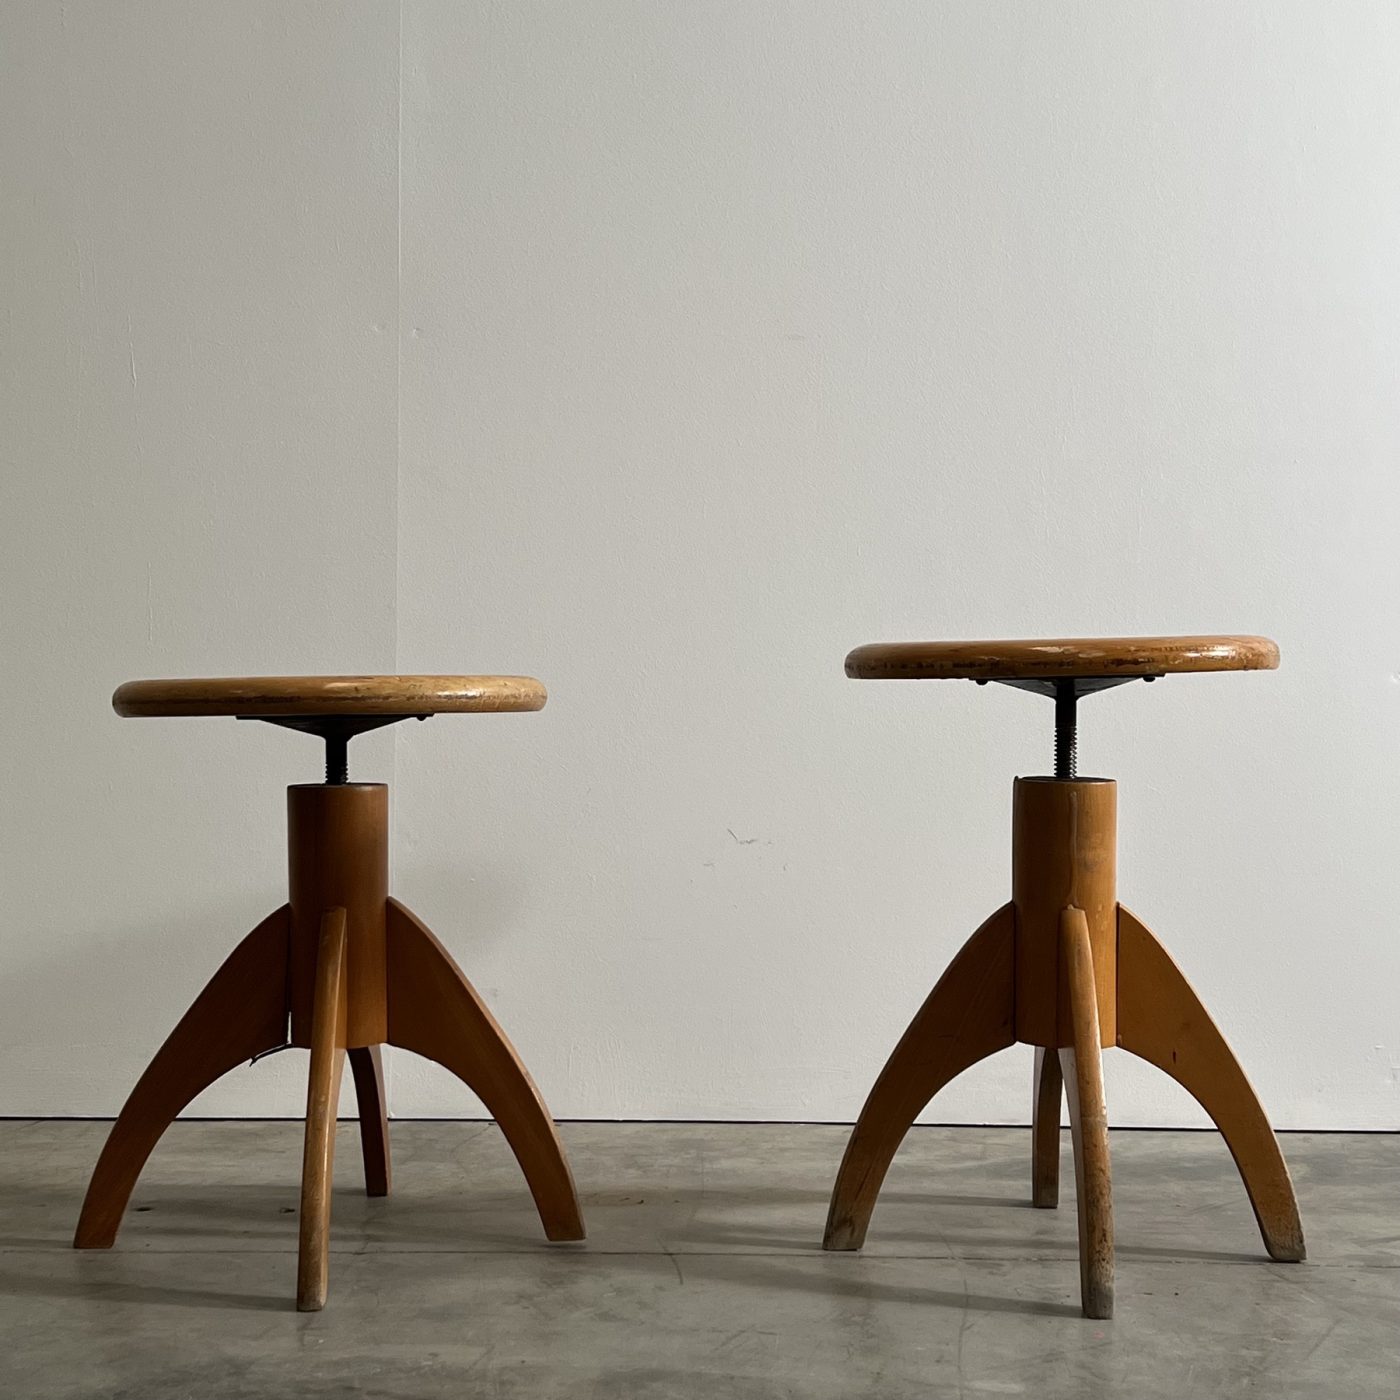 objet-vagabond-wooden-stools0003